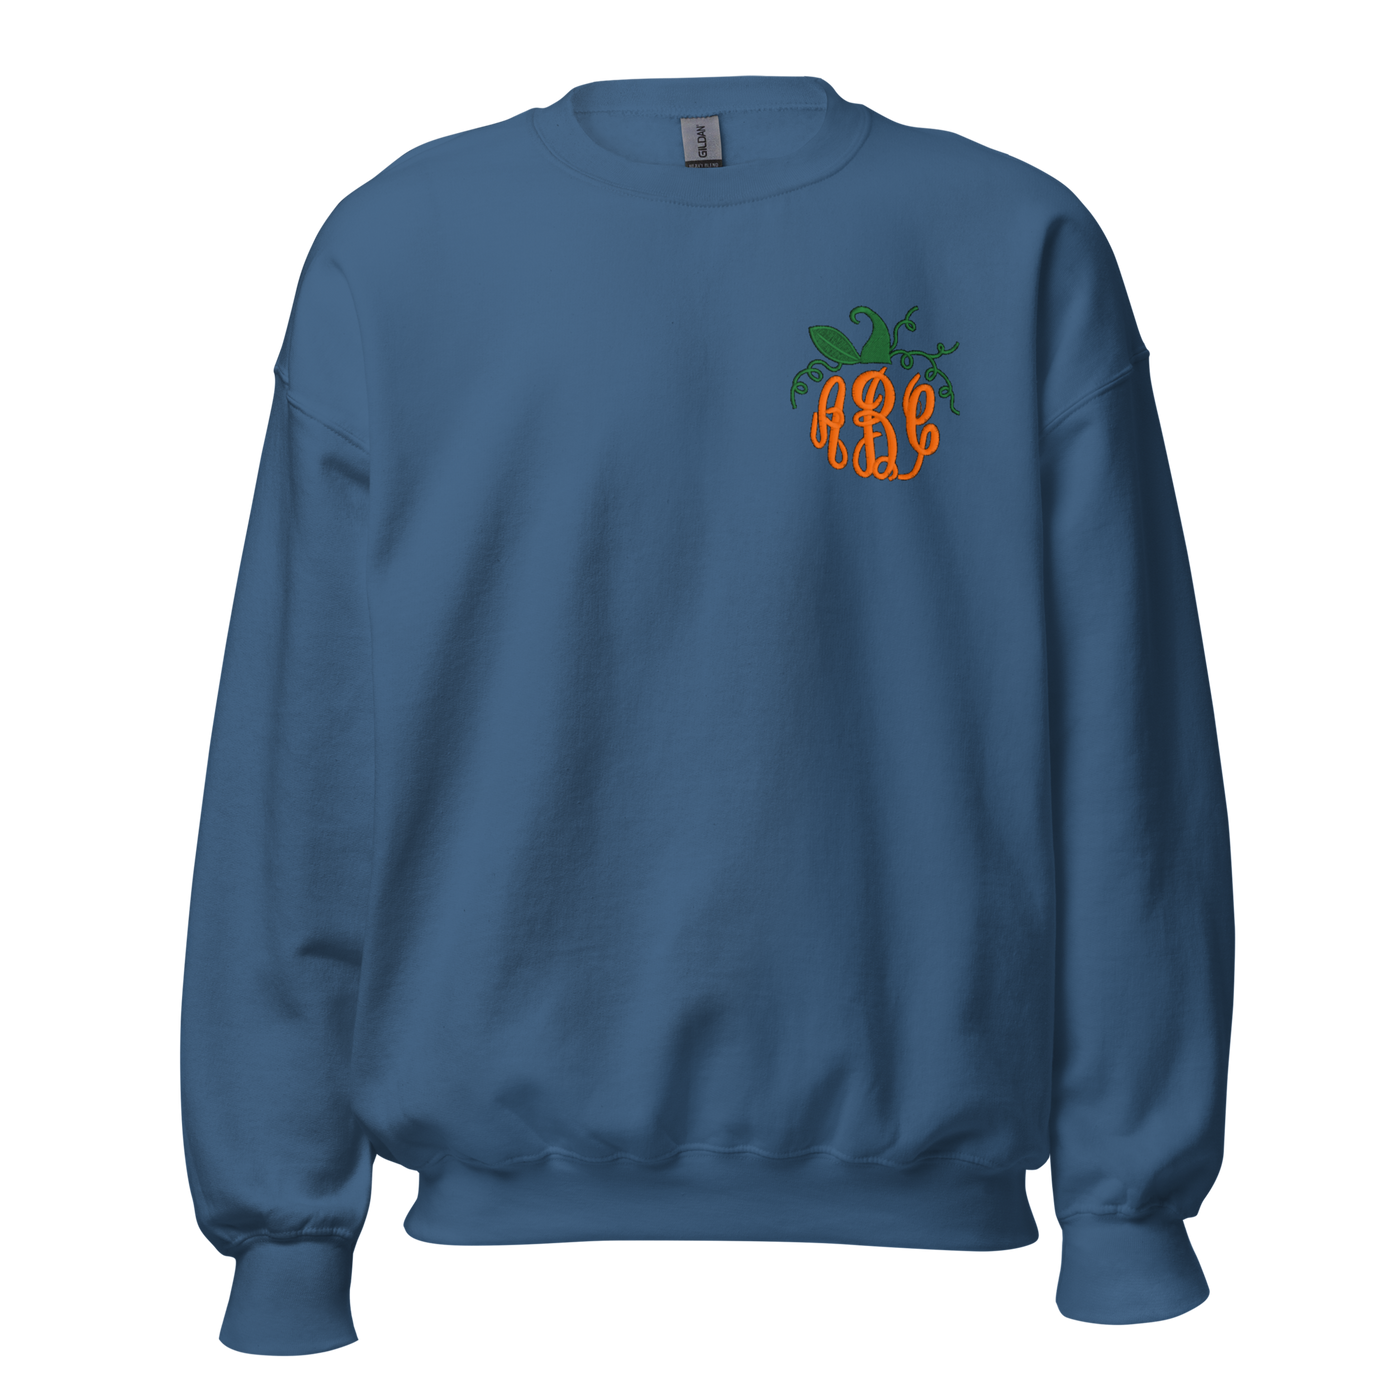 Monogrammed Pumpkin Crewneck Sweatshirt